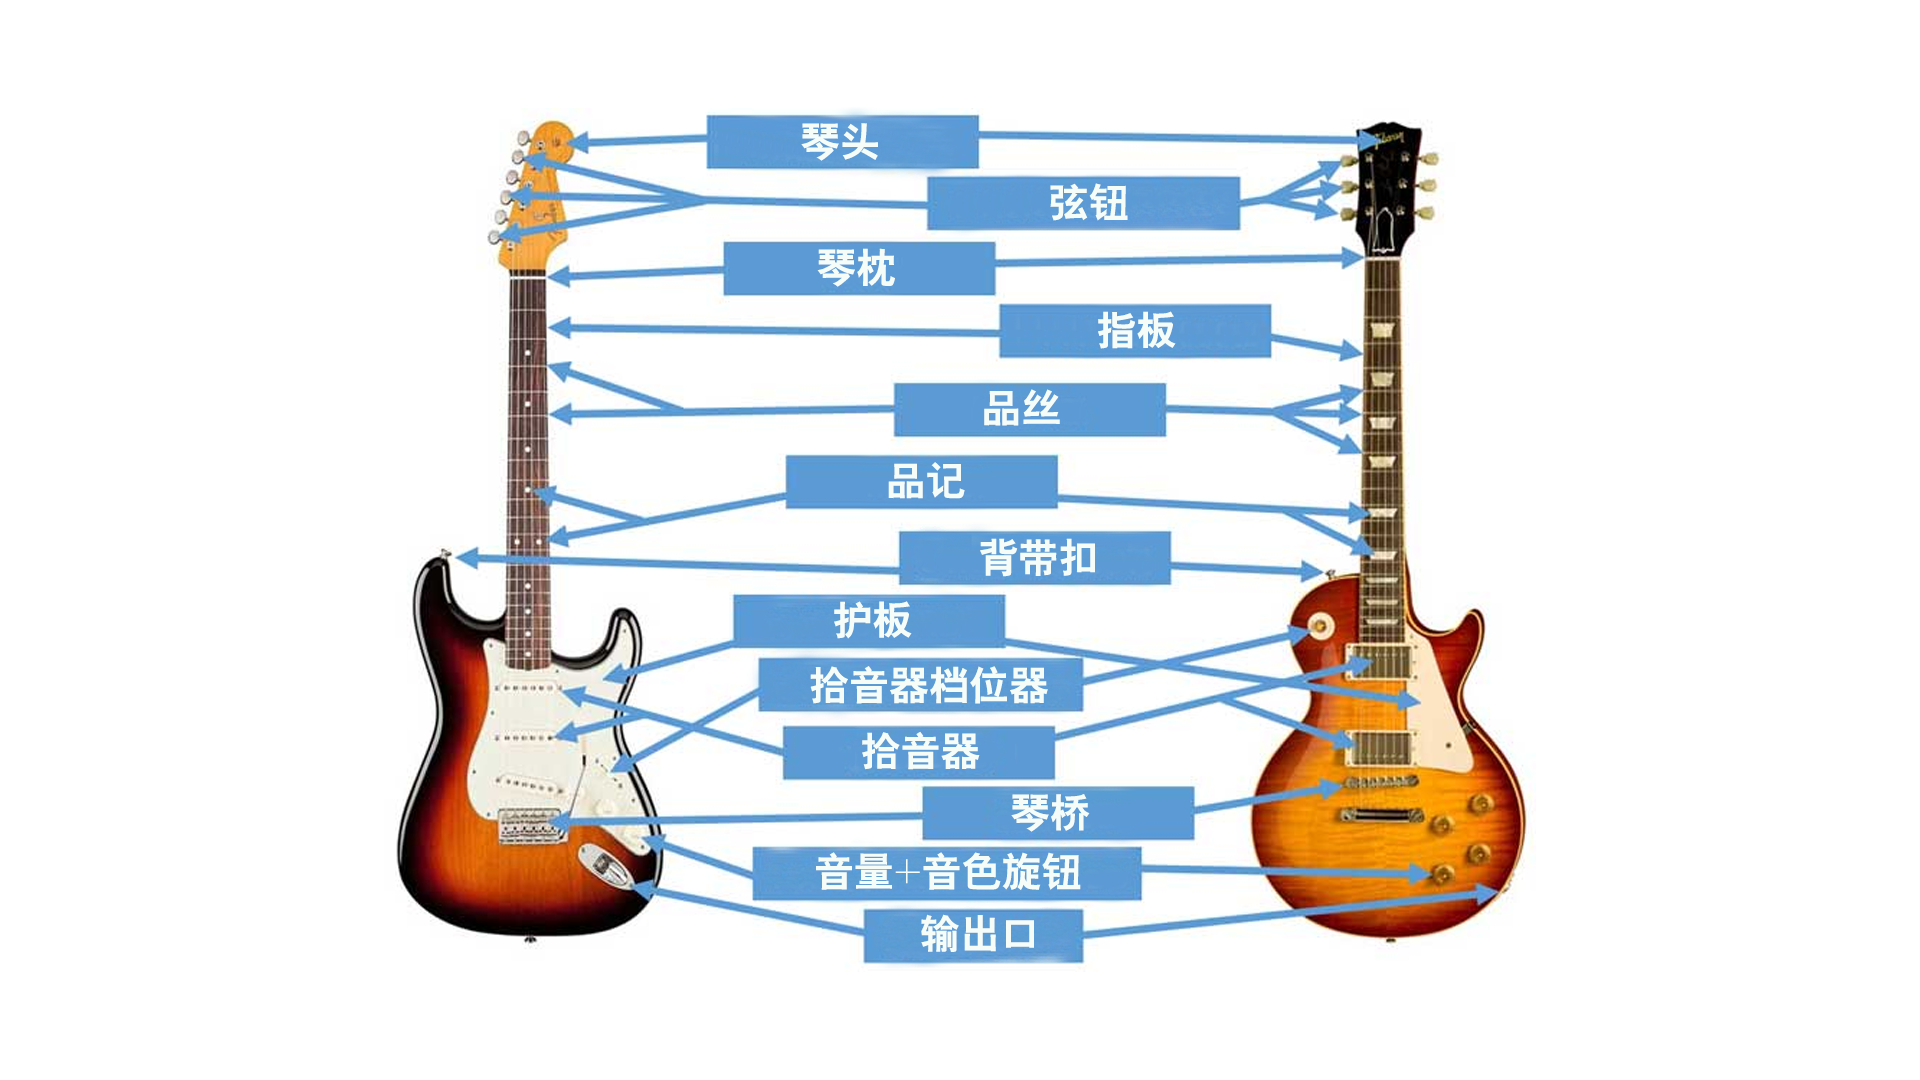 了解并掌握吉他不同部分的名称将更容易跟随各种吉他教学课程,因此这